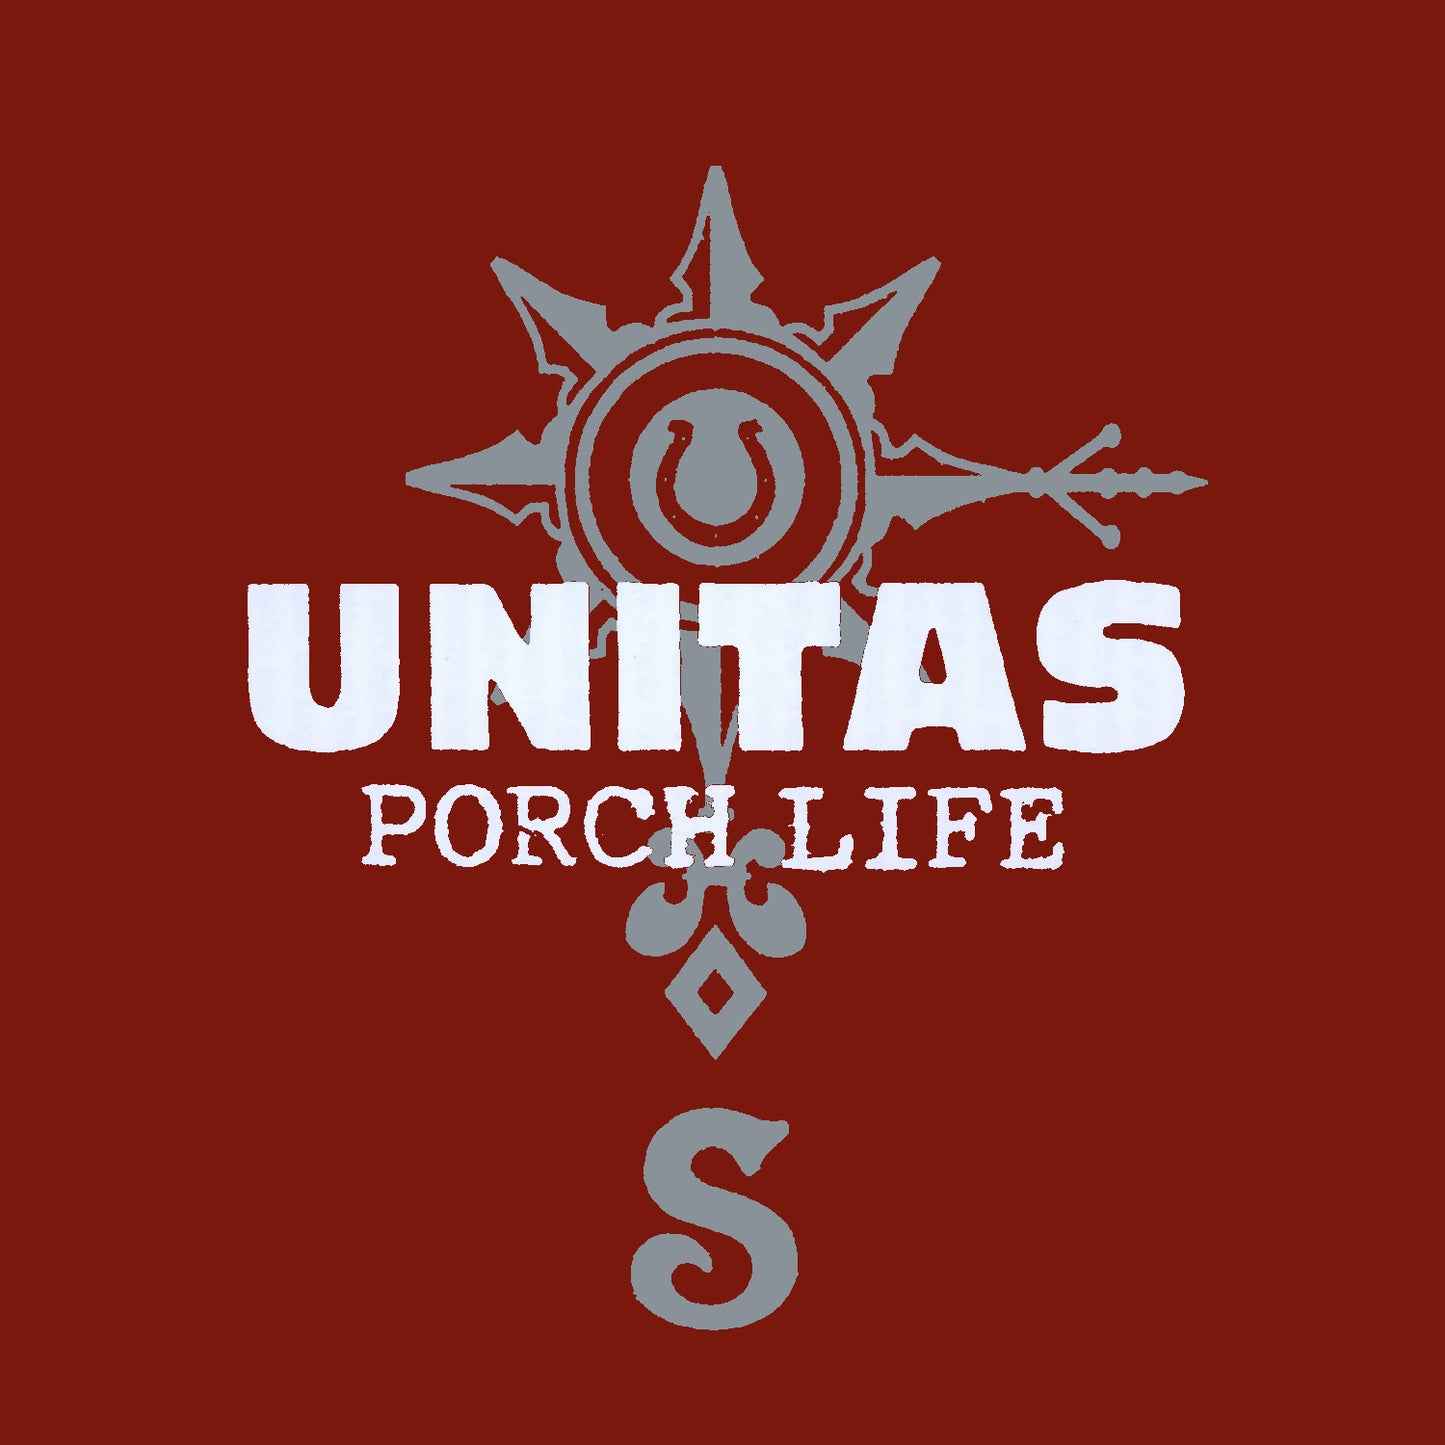 UNITAS "Porch Life"